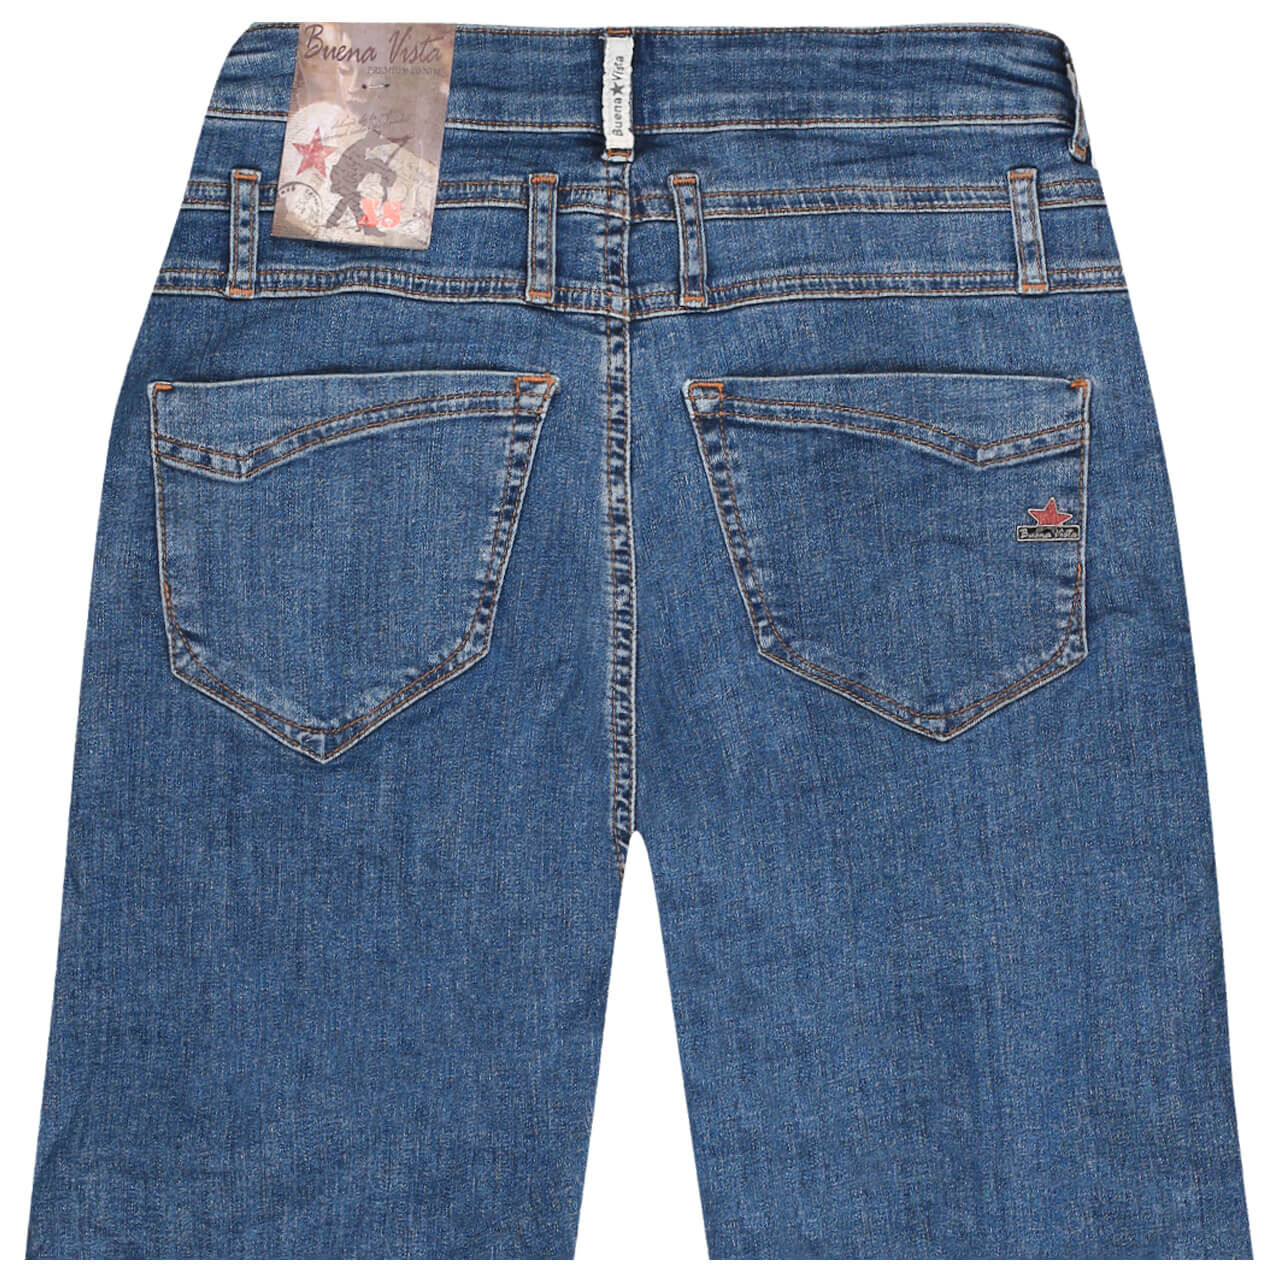 Buena Vista Jeans Florida-Short Stretch Denim für Damen in Hellblau verwaschen, FarbNr.: 8678